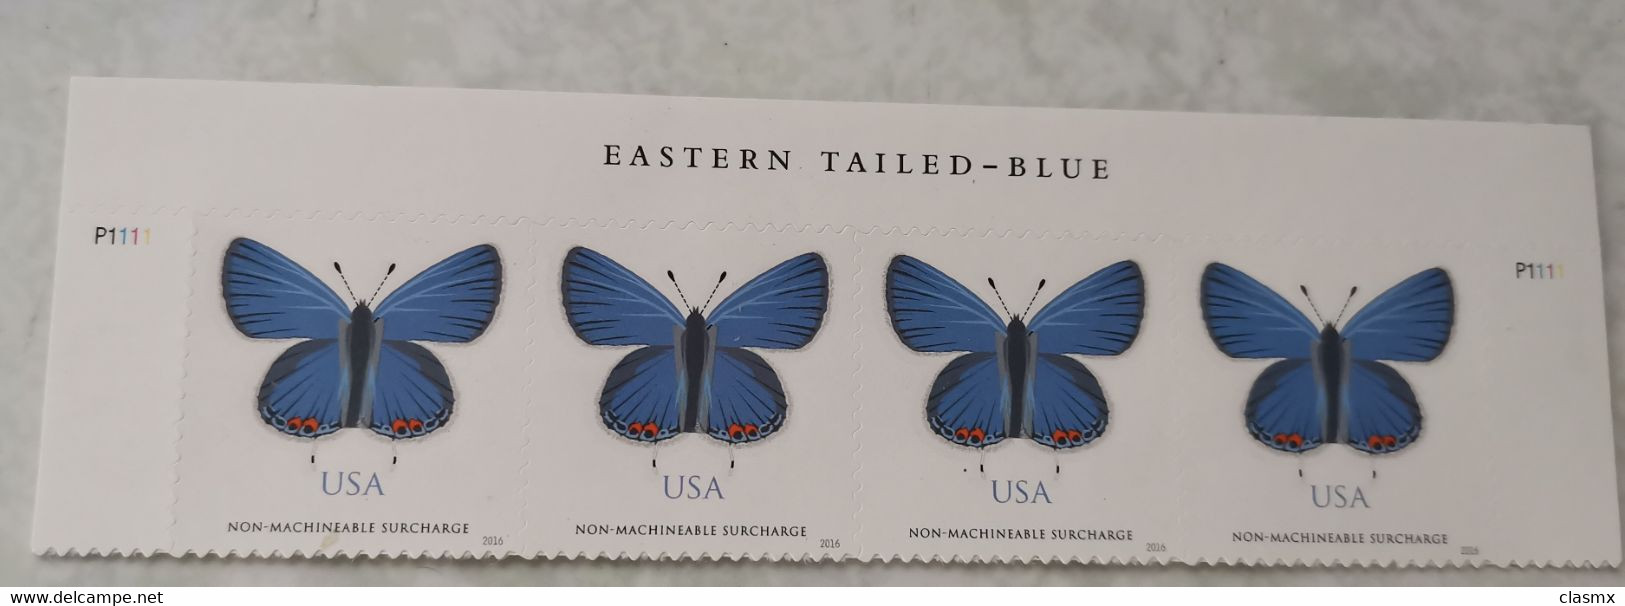 USA Blue Butterflies STAMPS MNH EASTERN TILED BLUE - Neufs